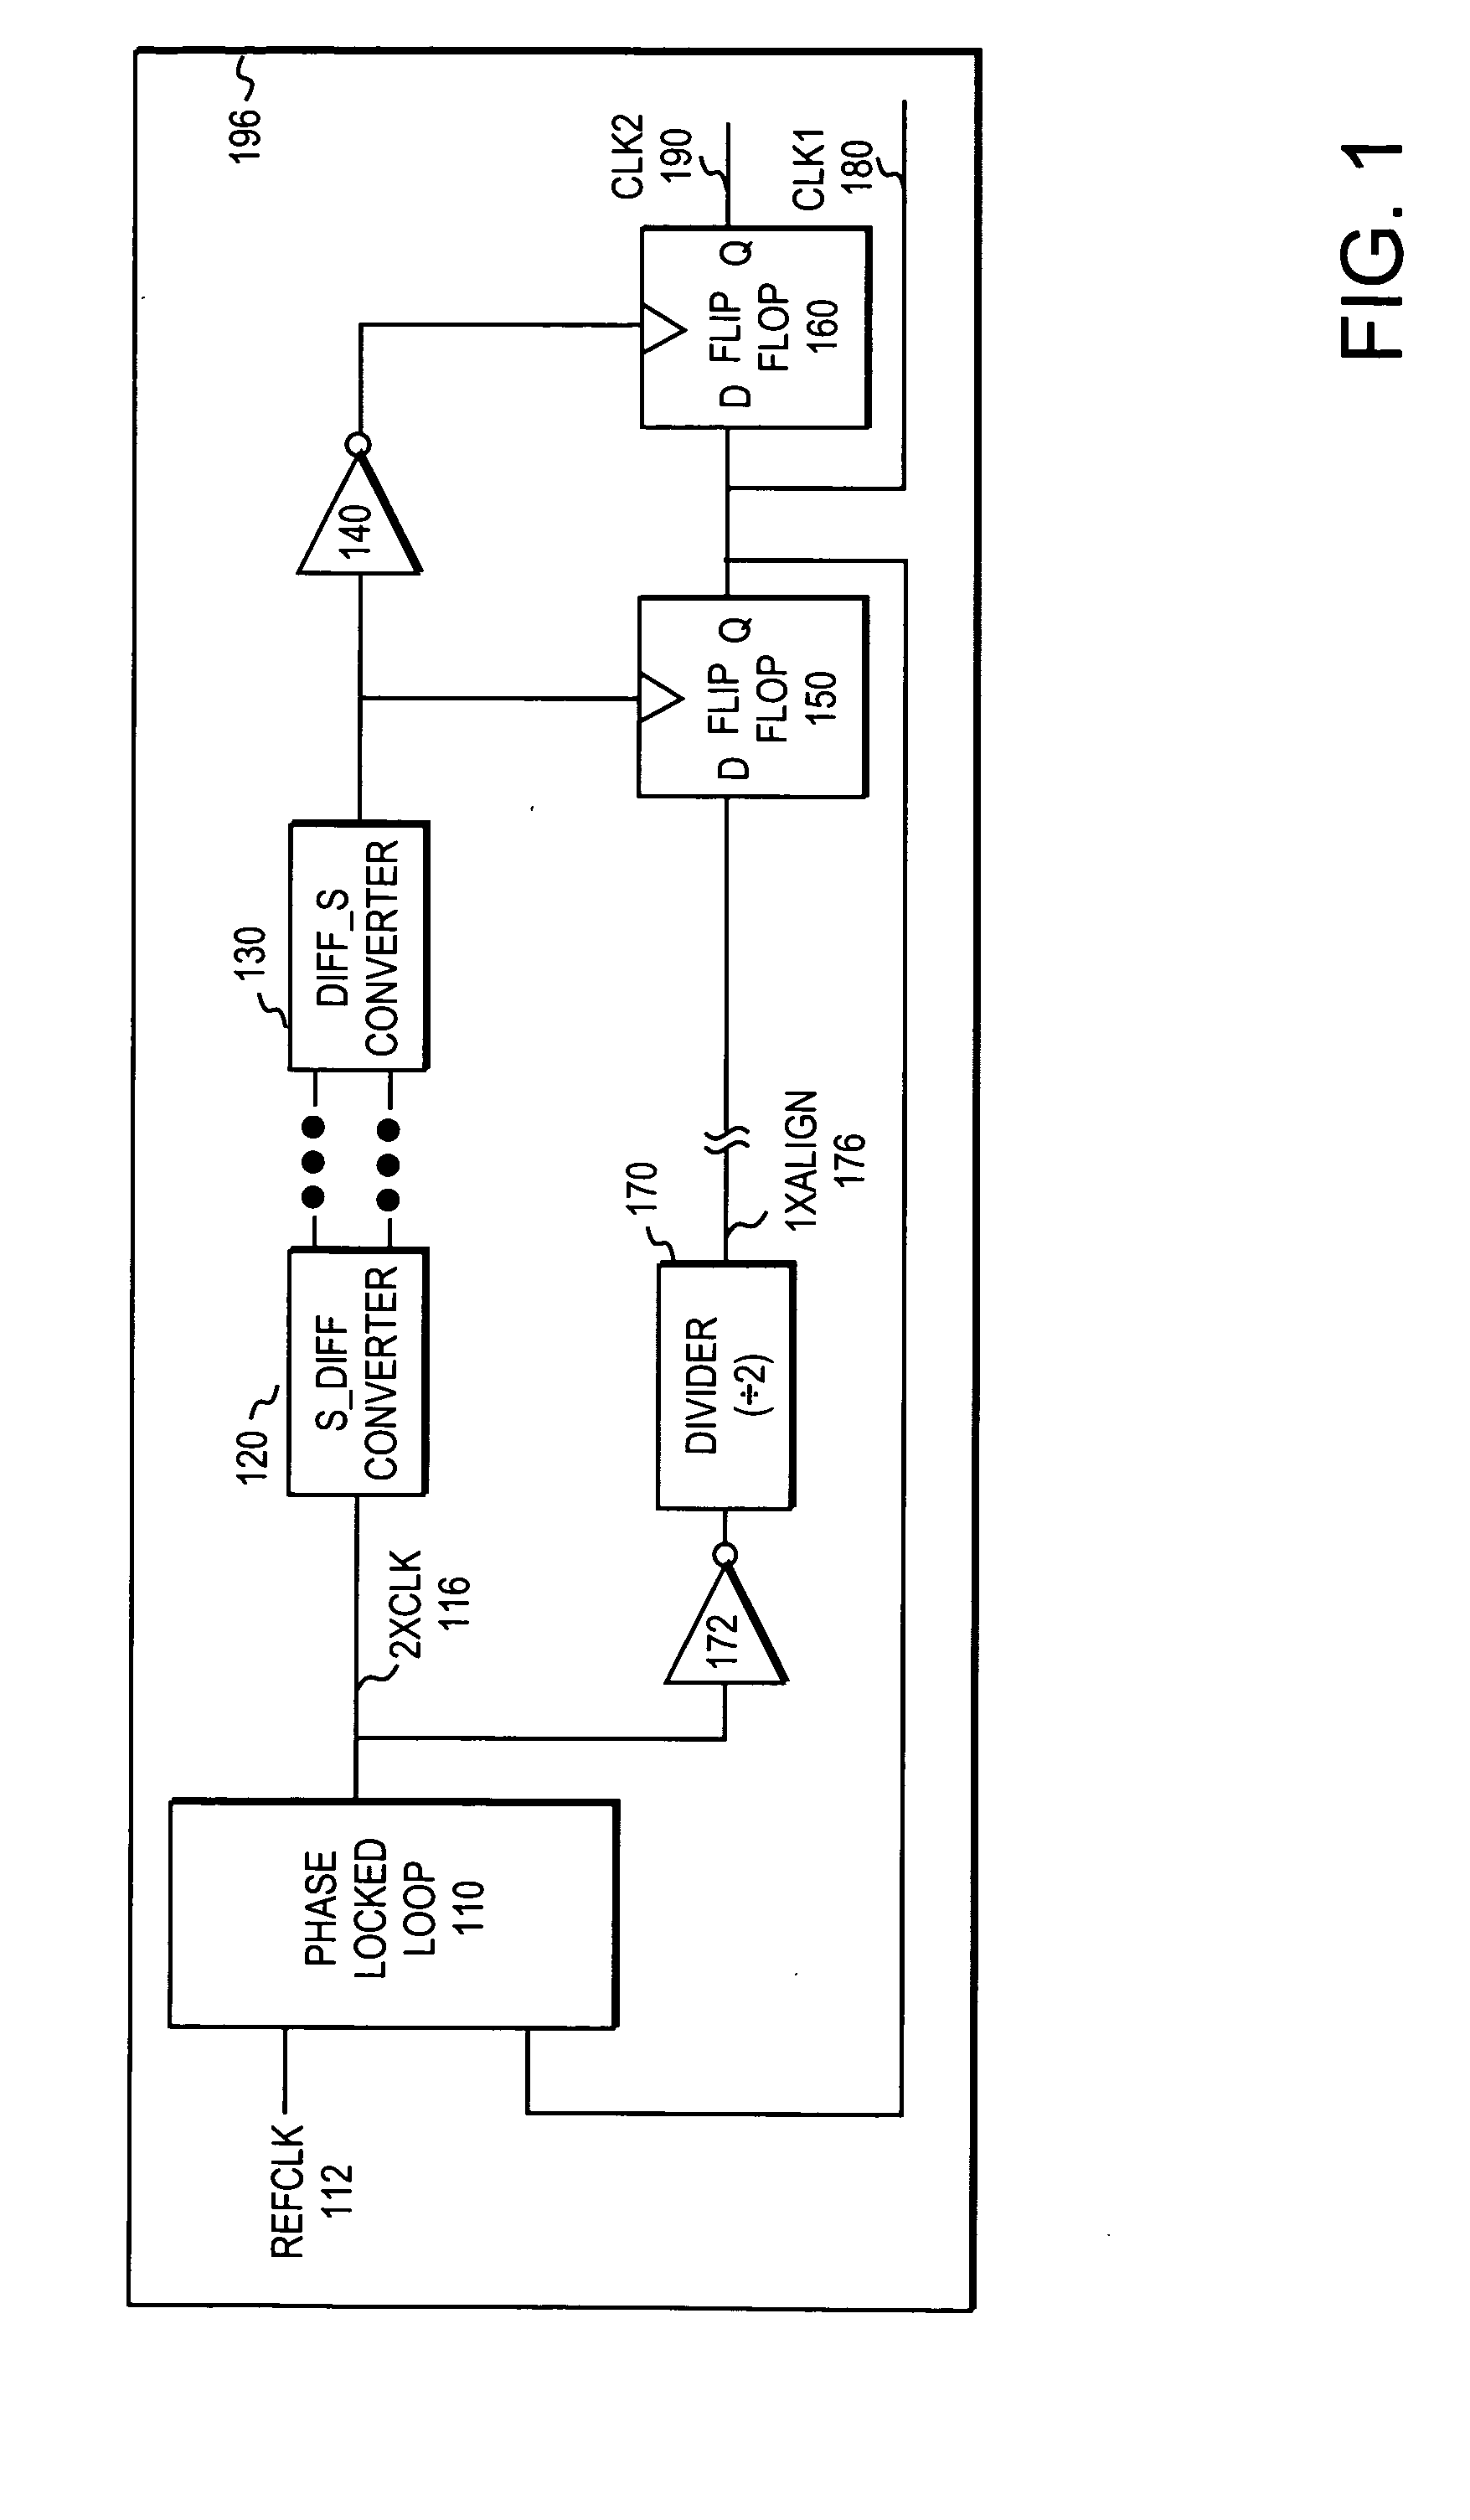 Method and apparatus for generating a quadrature clock